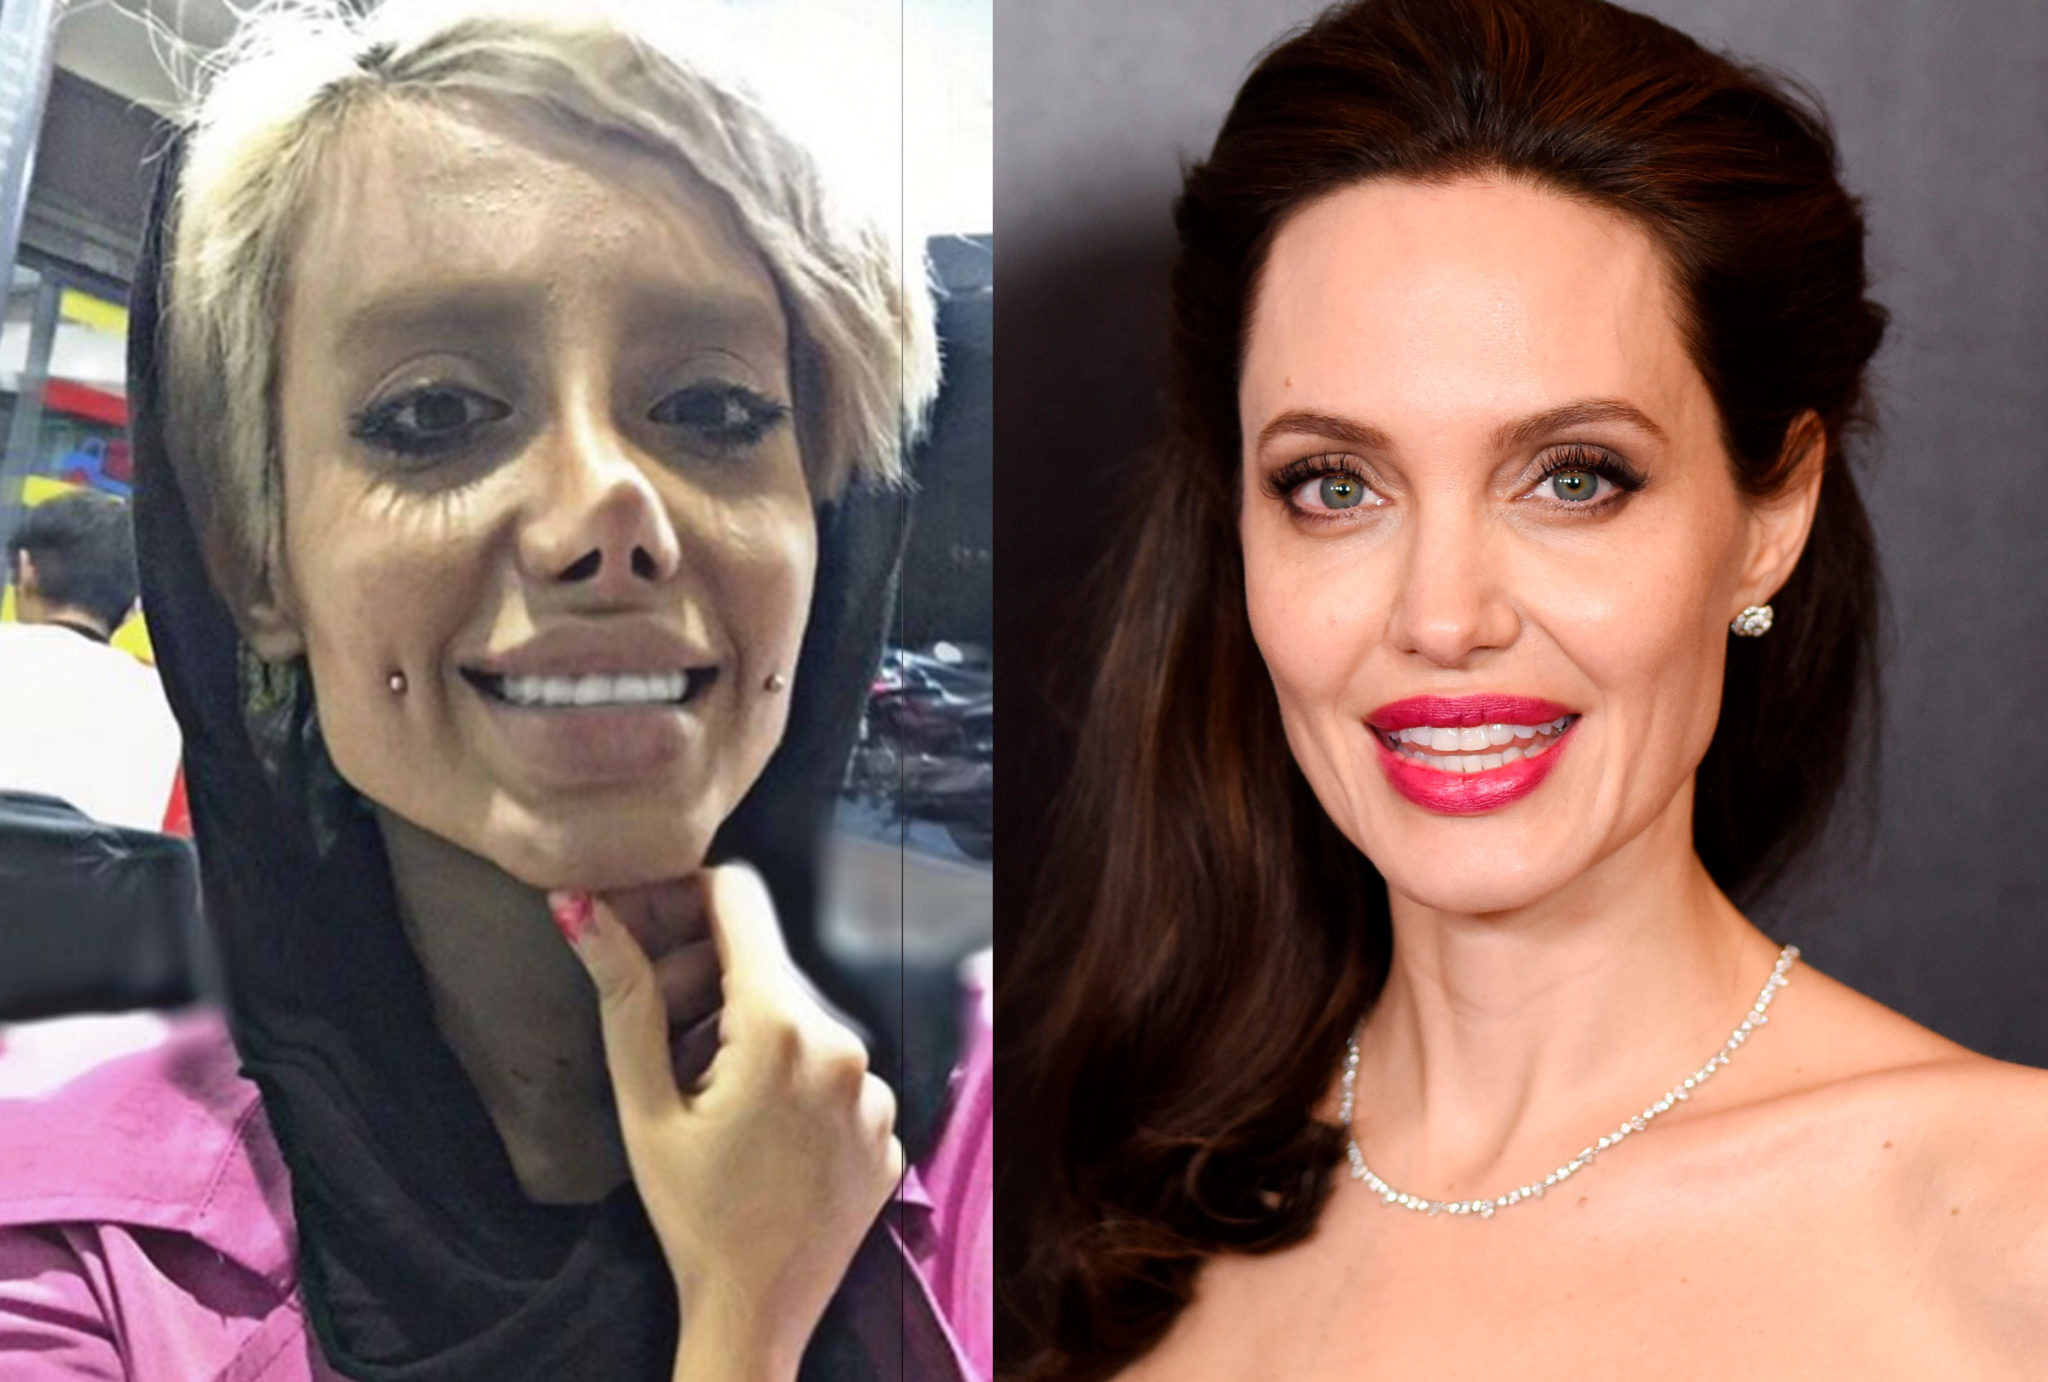 Что сделала с собой эта женщина, чтобы быть похожей на Джоли?